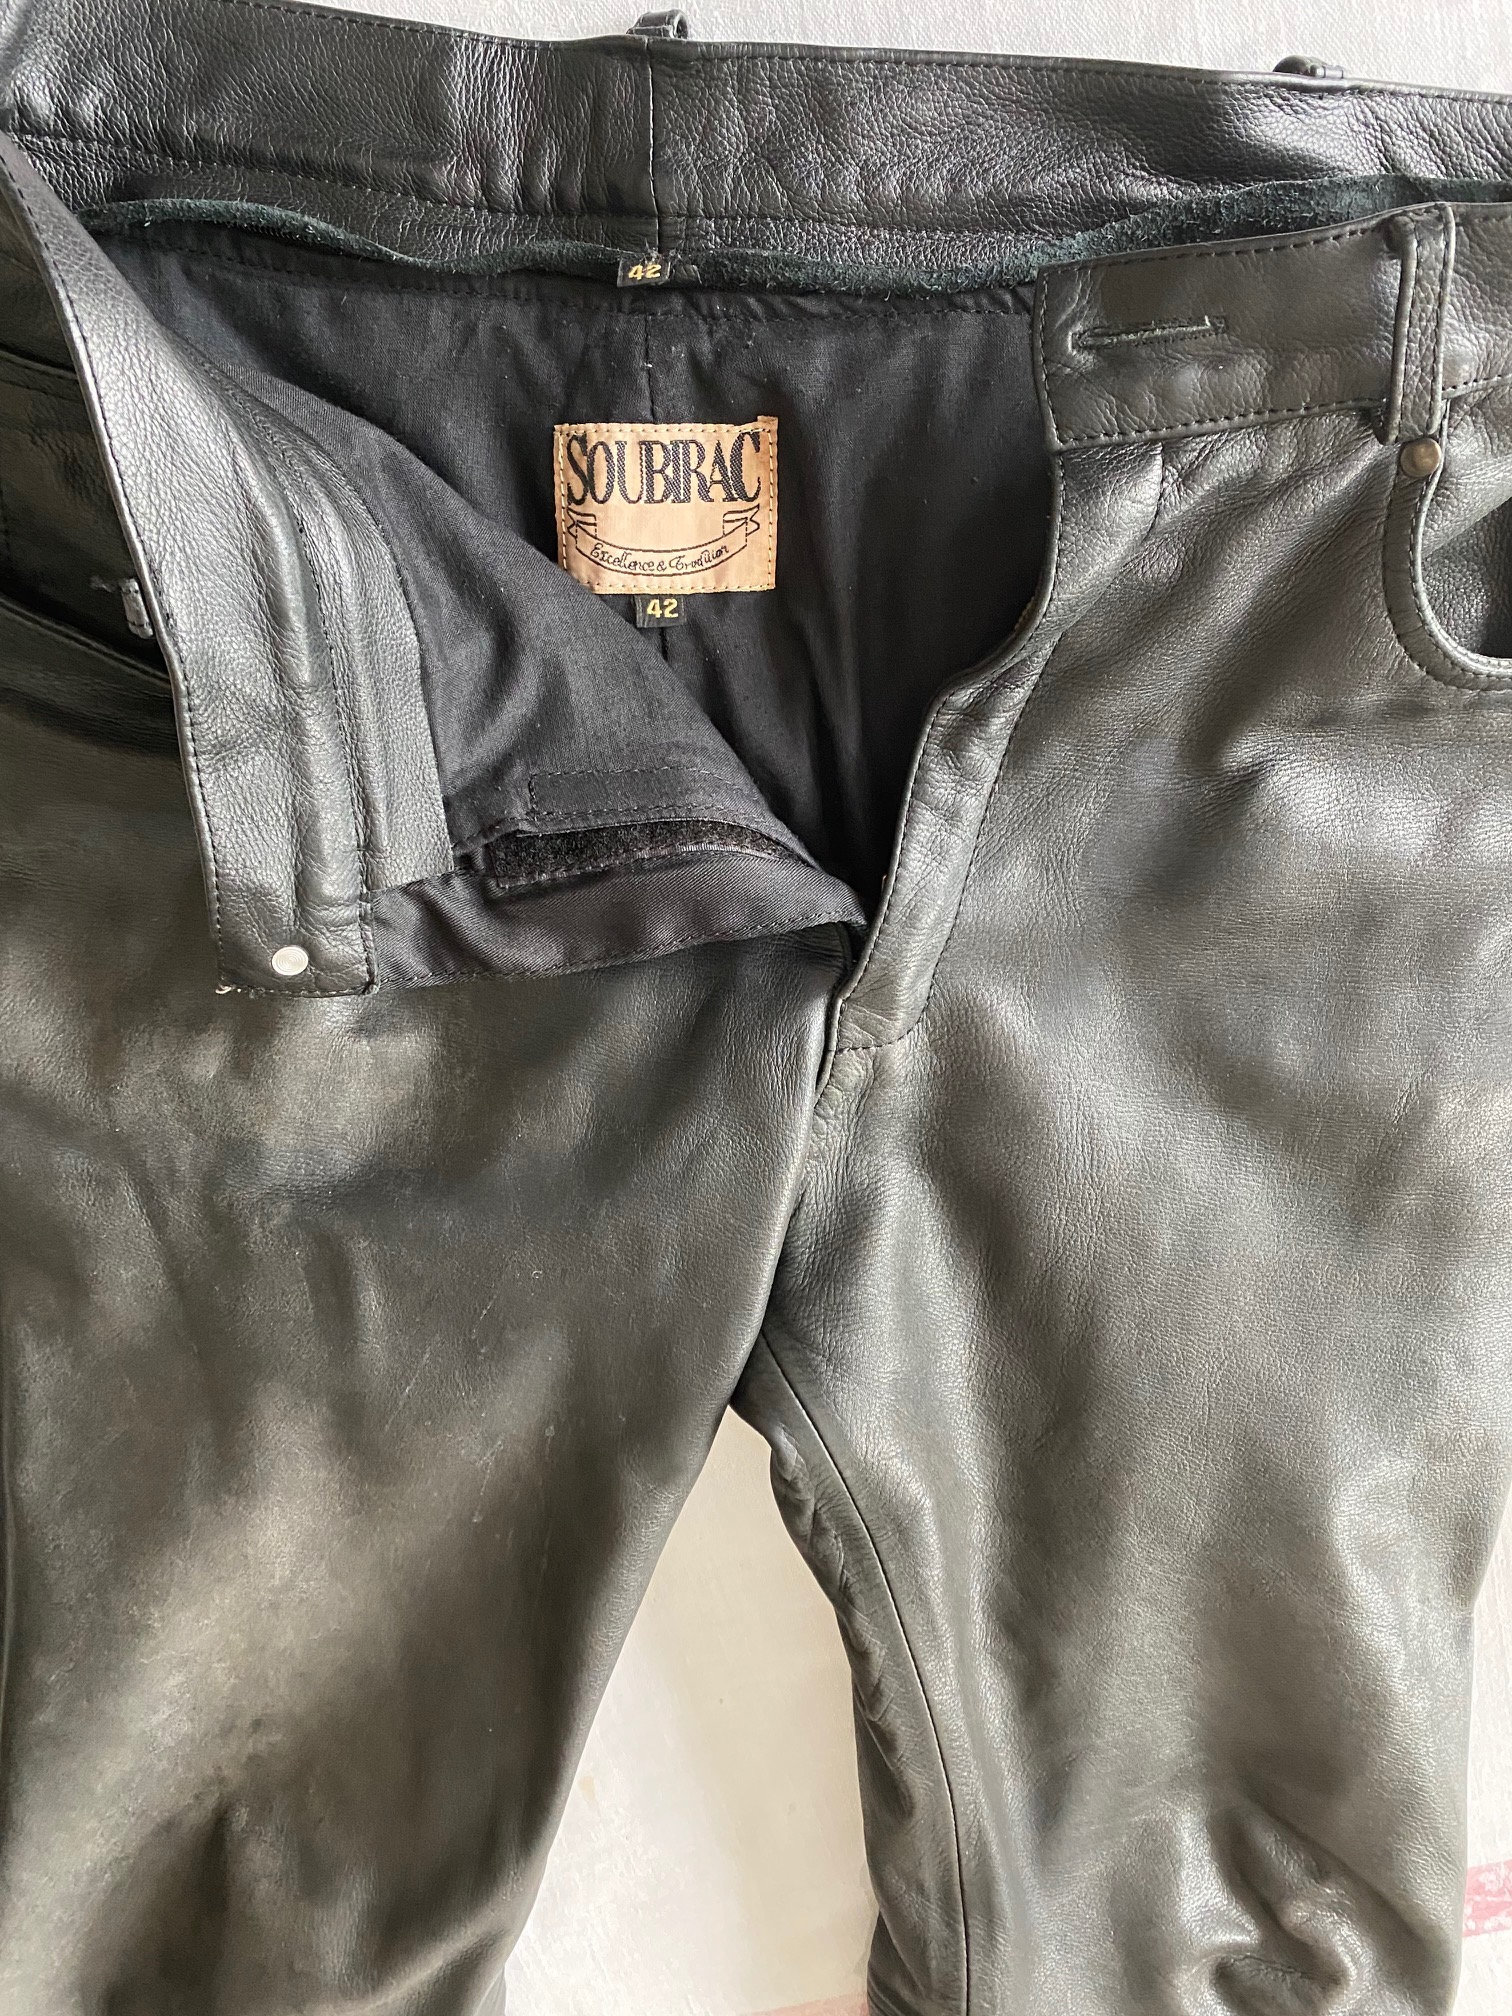 Vente pantalon cuir Soubirac [VENDU] Cb49